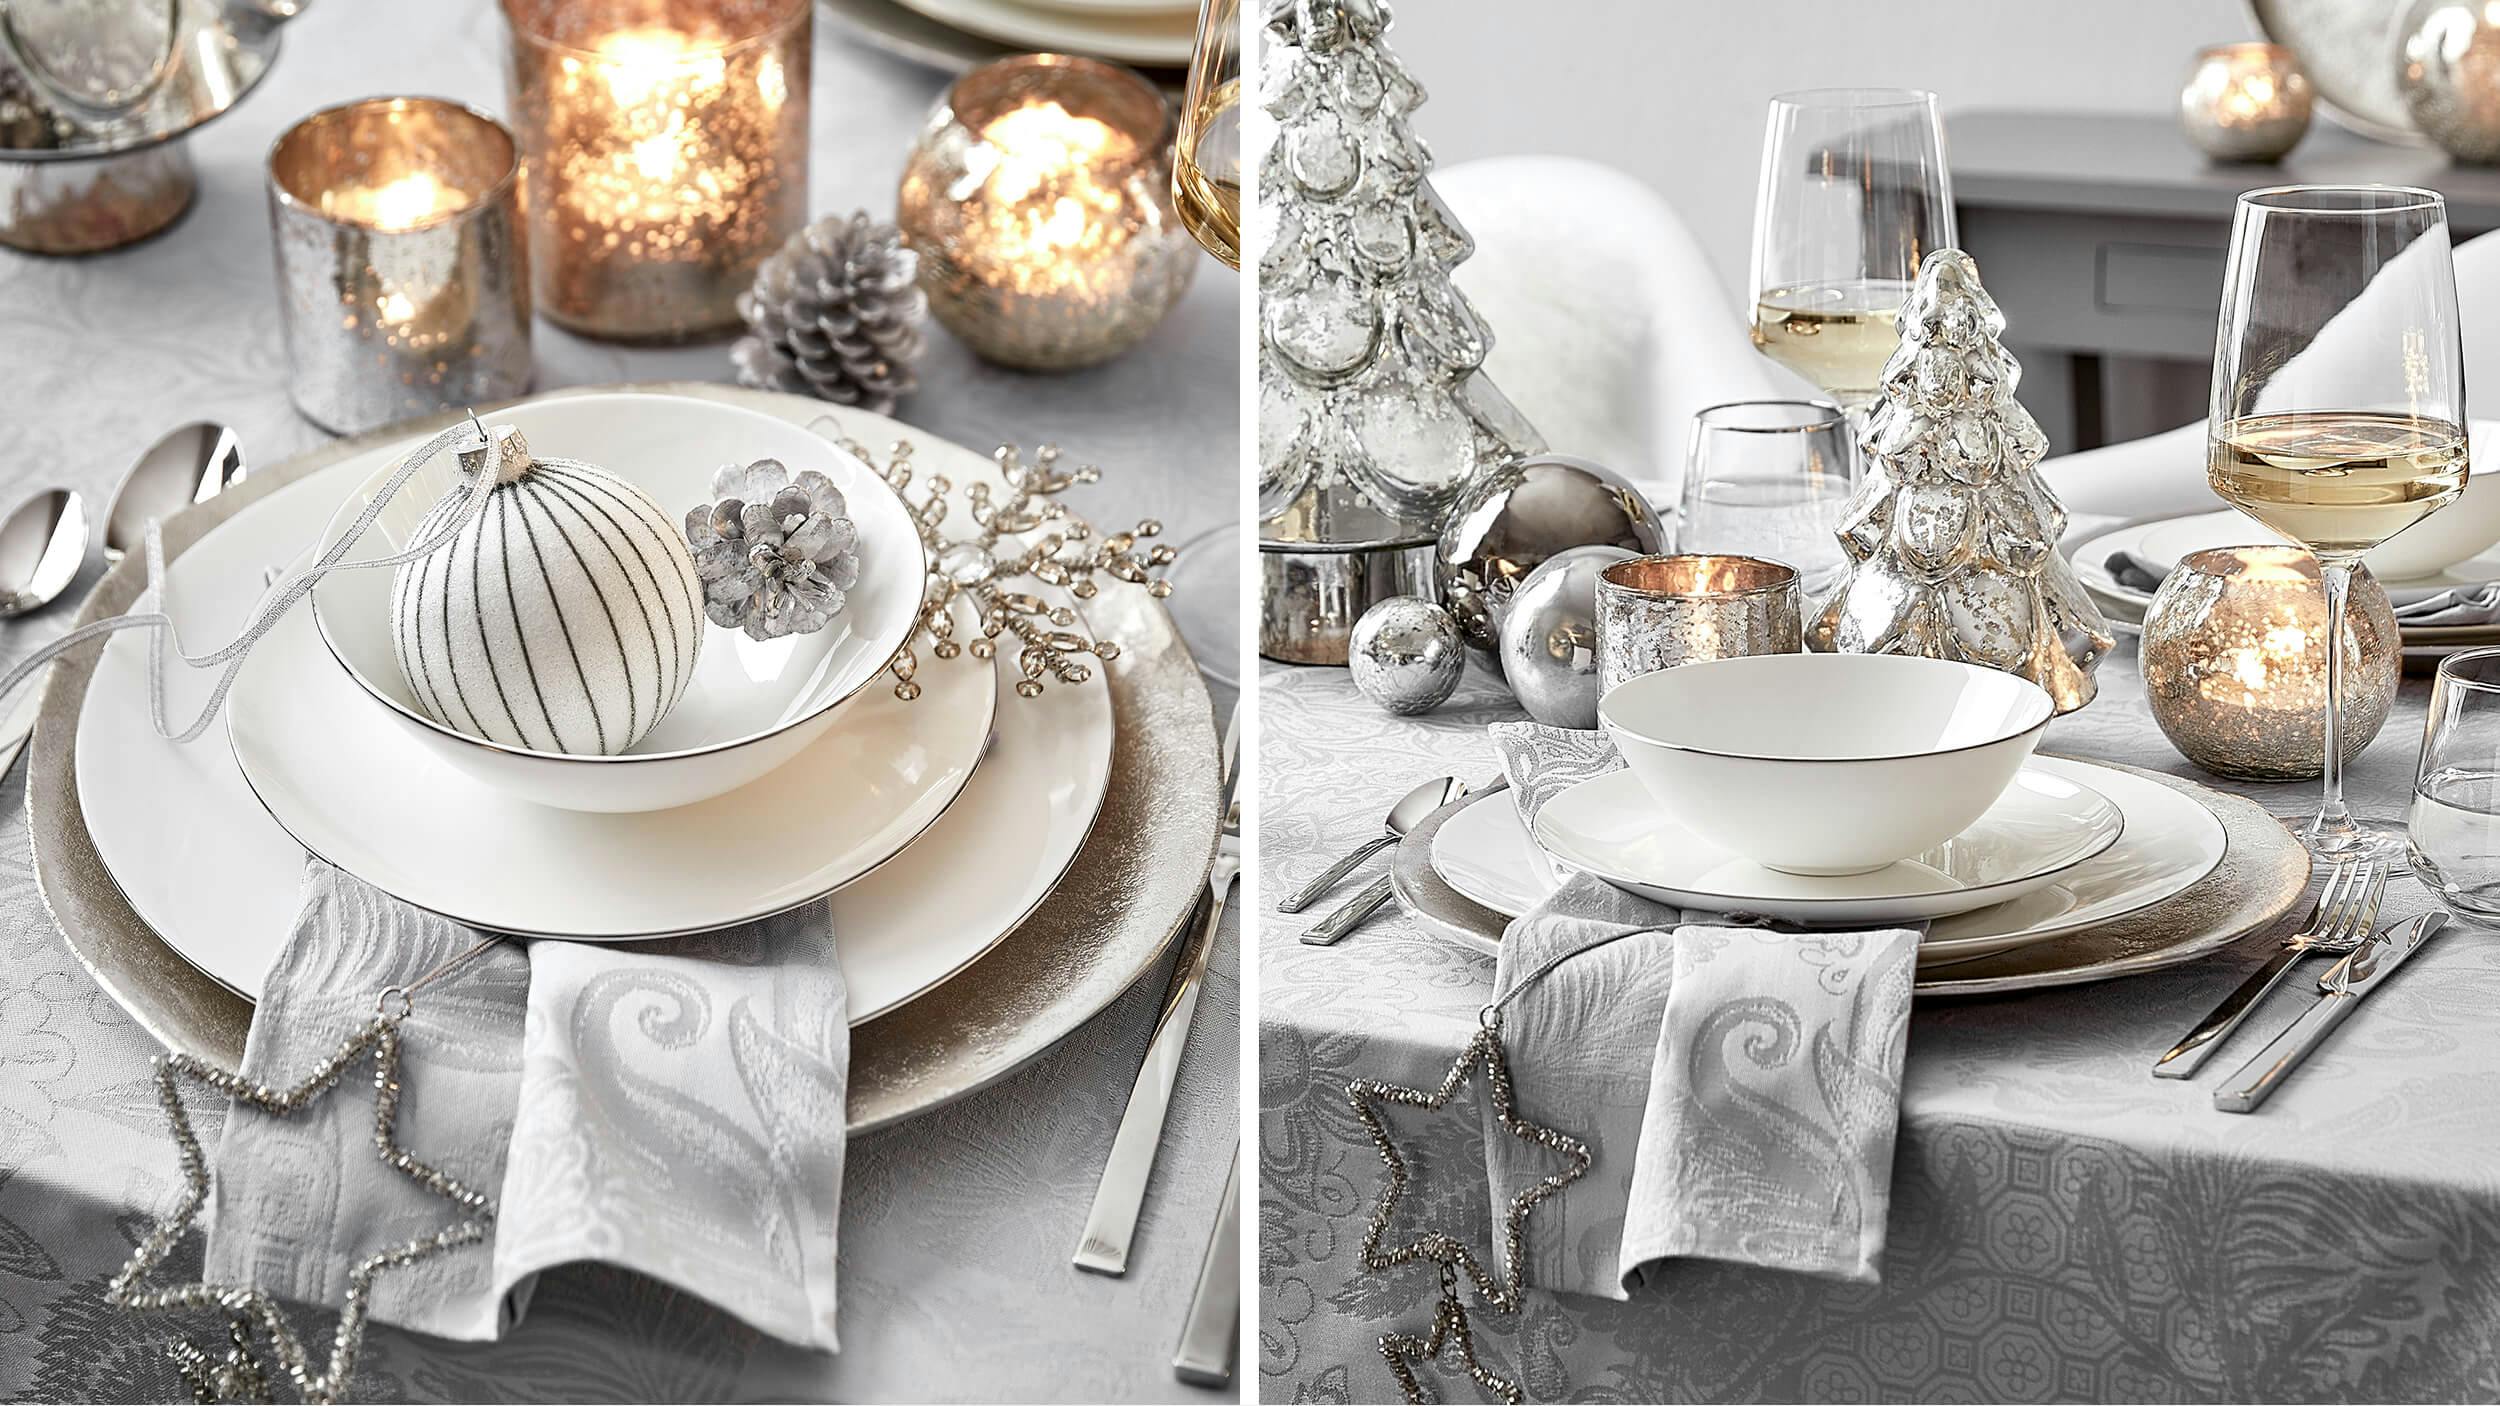 Leuchtende Deko-Ideen in Weiß und Gold  Deko ideen, Weihnachten dekoration,  Dekoration